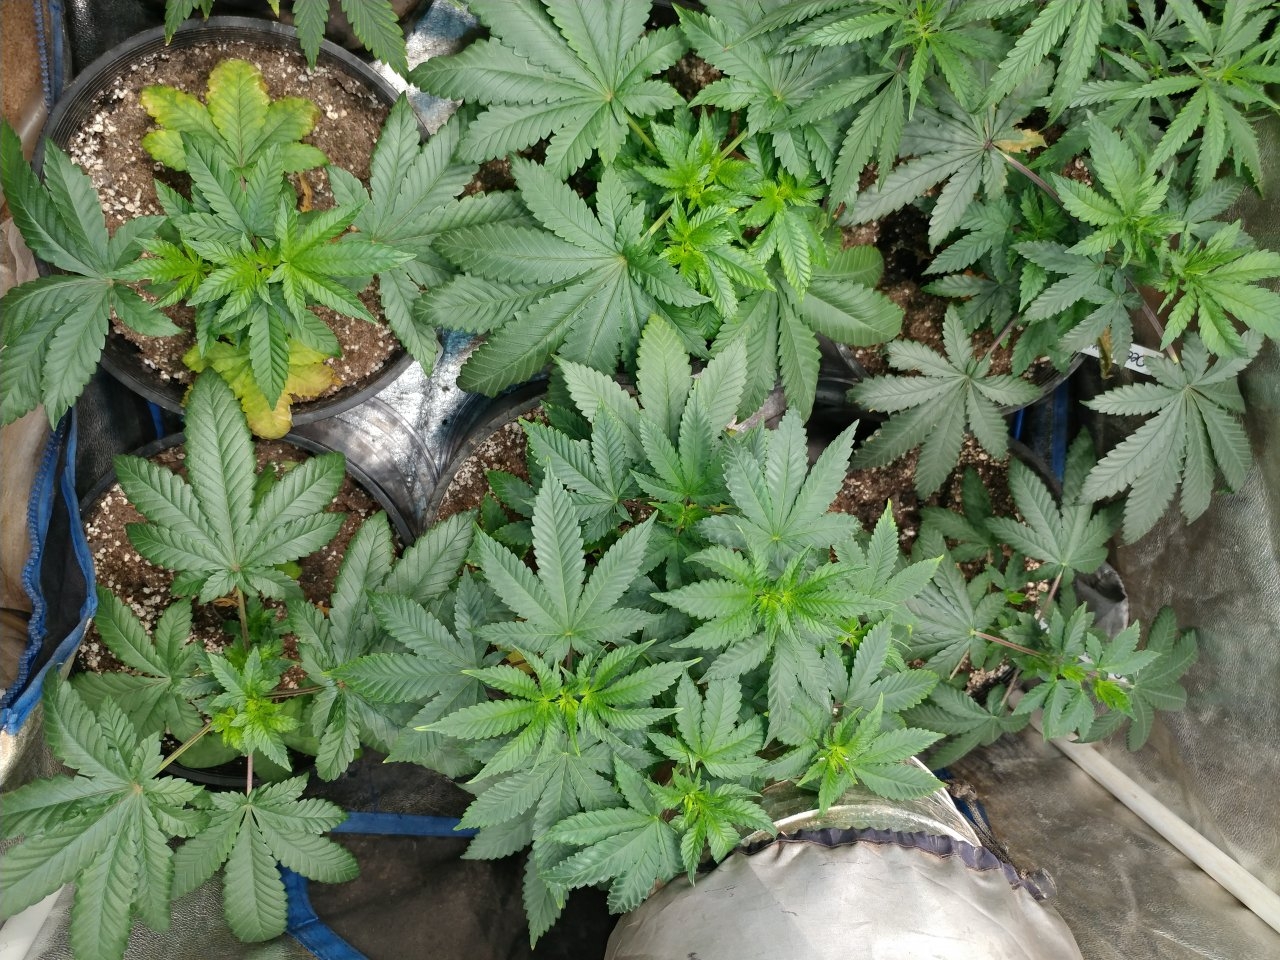 2018 Icemud Hazeman's Monkey balls aka deep chunk seed project indoor cannabis grow in soil under LED grow lights